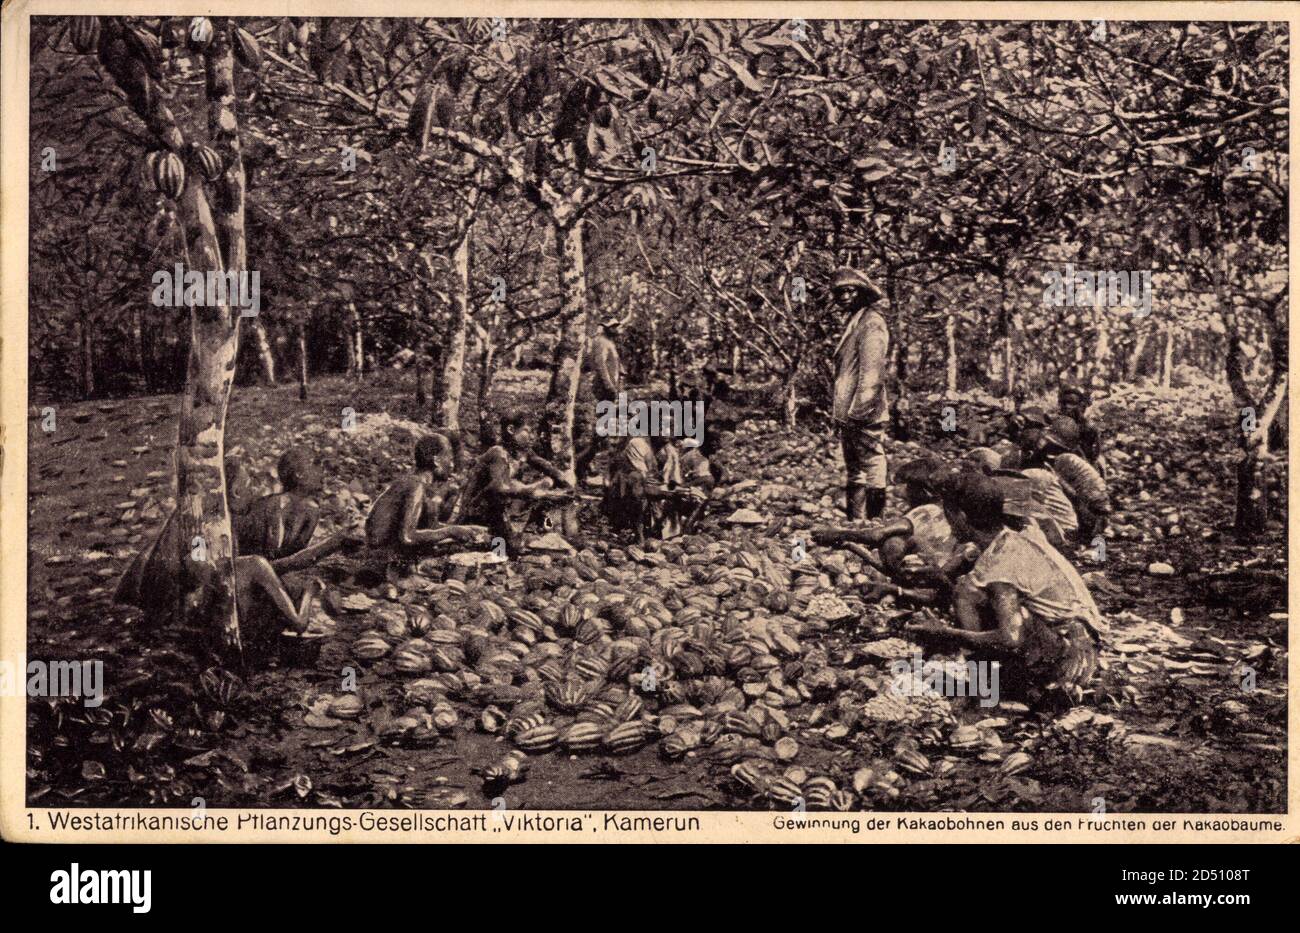 Kamerun, Gewinnung der Kakaobohnen aus den Früchten der Kakaoblume | utilizzo in tutto il mondo Foto Stock